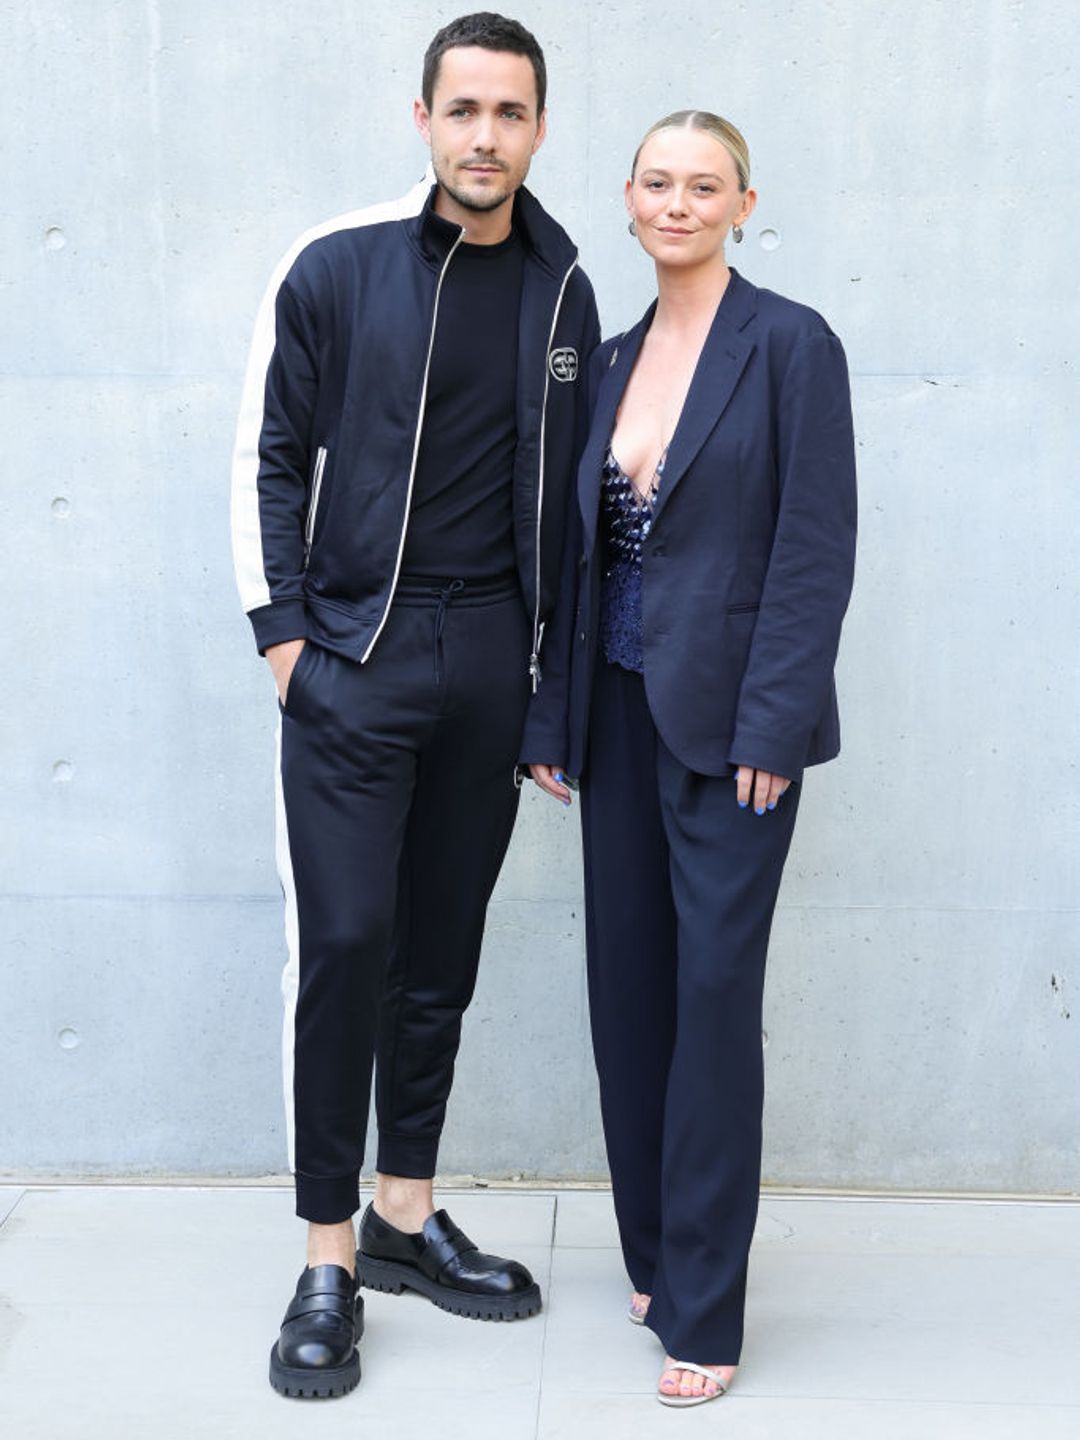 Jonah Hauer-King and Ellie Fenn at Milan Fashion Week